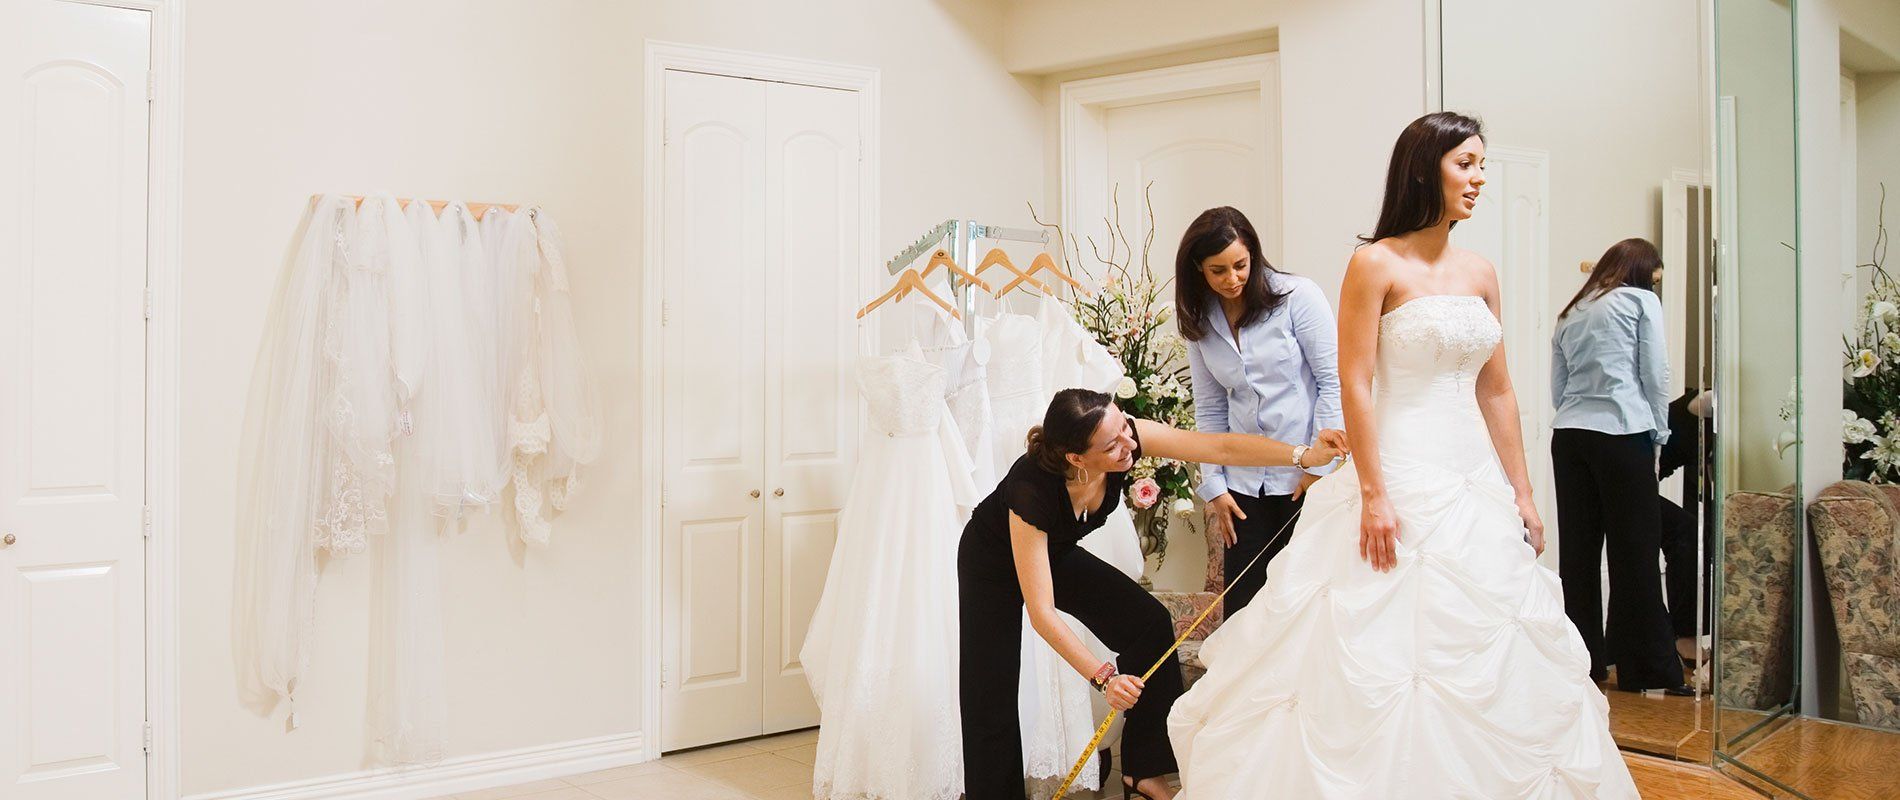 3 Best Bridal Shops in Albuquerque, NM - Expert 